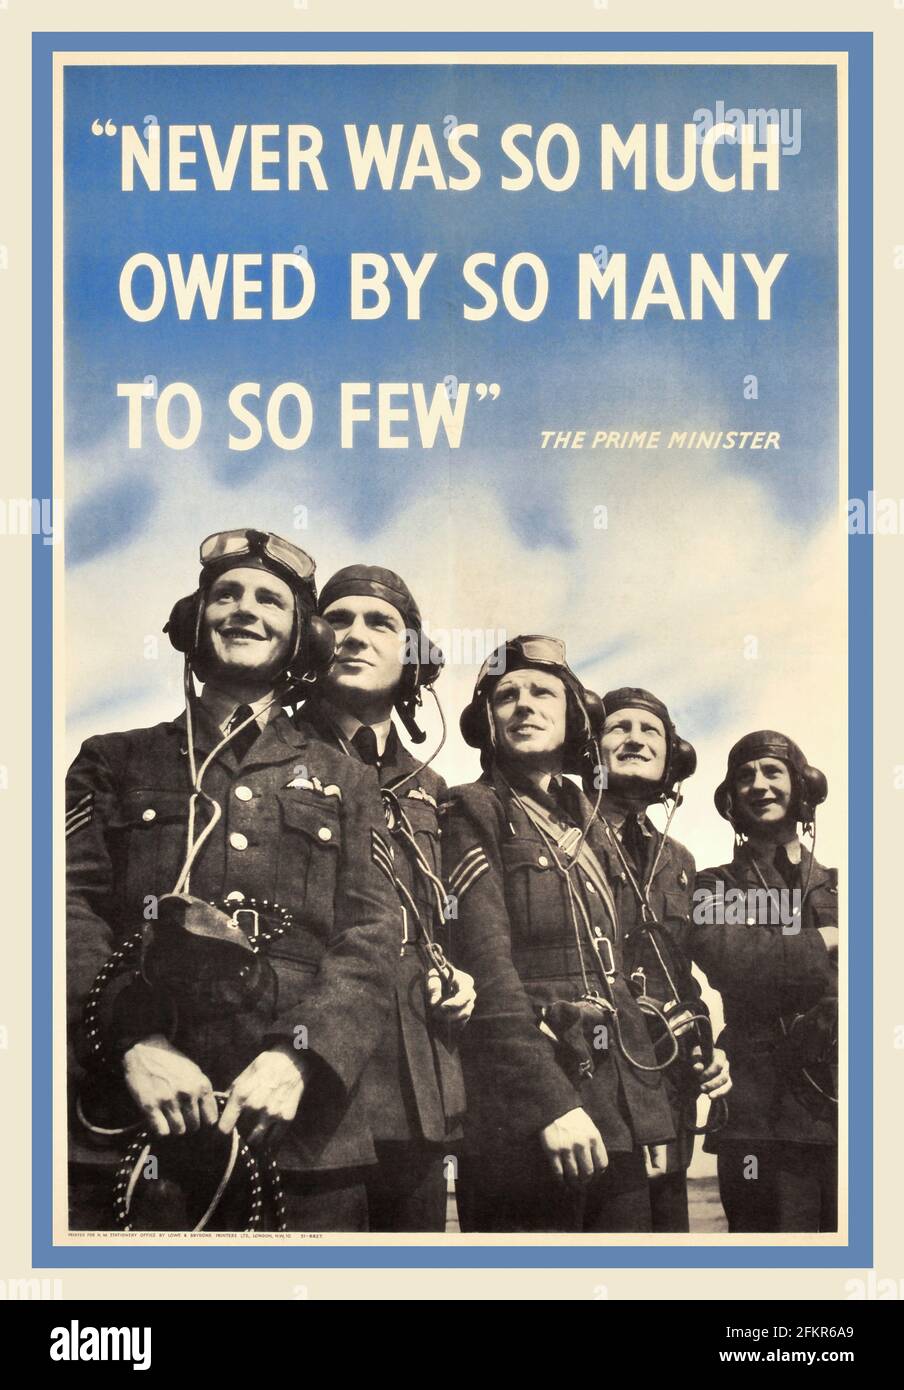 Battle of Britain RAF 1940, époque britannique WW2 RAF Royal Air Force affiche de propagande - avec le Premier ministre Winston Churchill citation célèbre. « JAMAIS TANT DE GENS N'ONT DÛ AUTANT À SI PEU » Banque D'Images